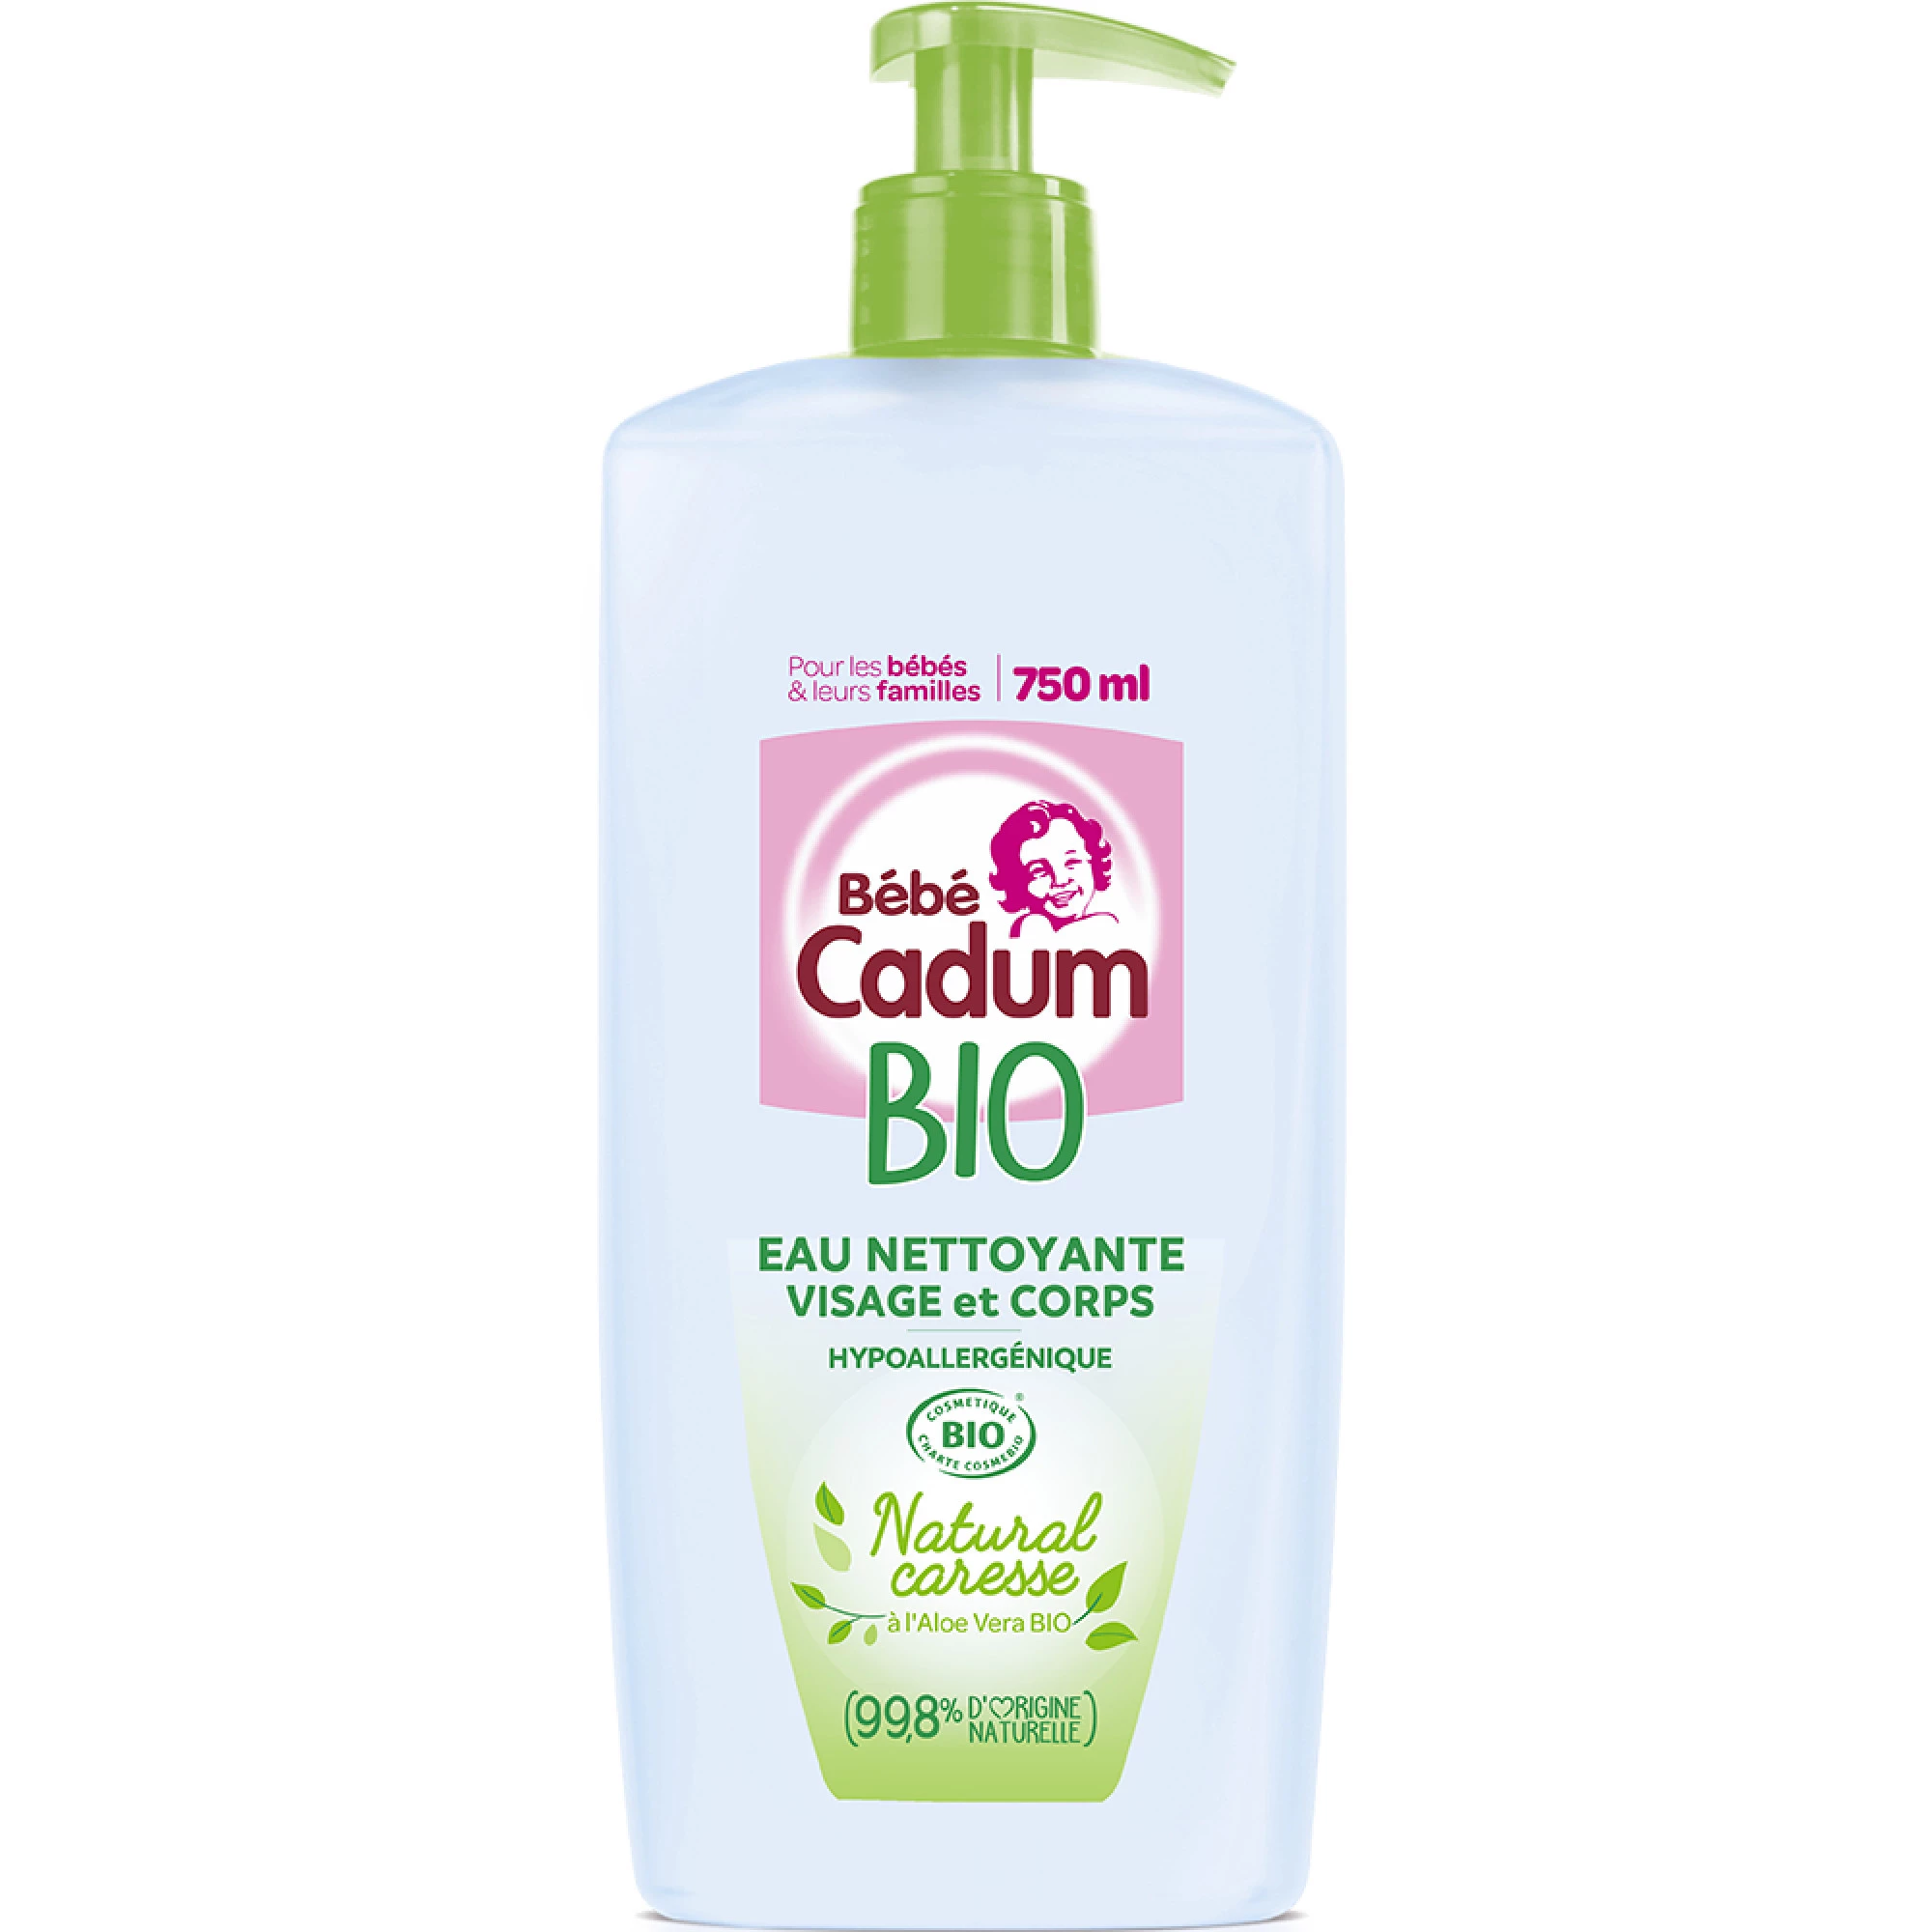 Cadum Bb 净味生物淡香水 750ml